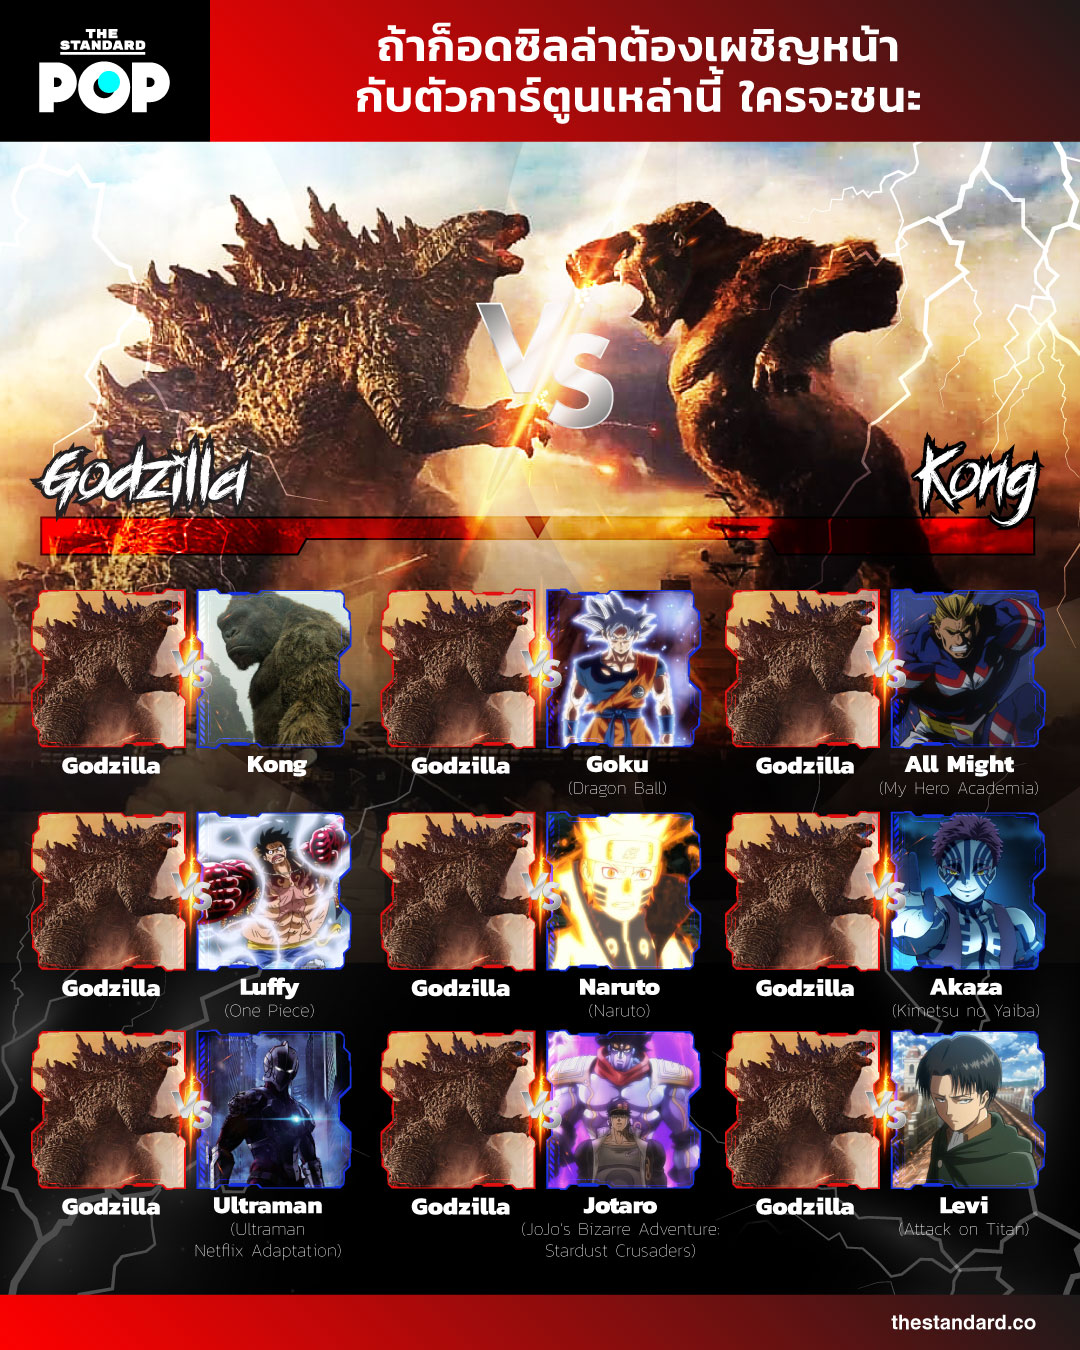  Godzilla vs. Kong (2021) infograpgic